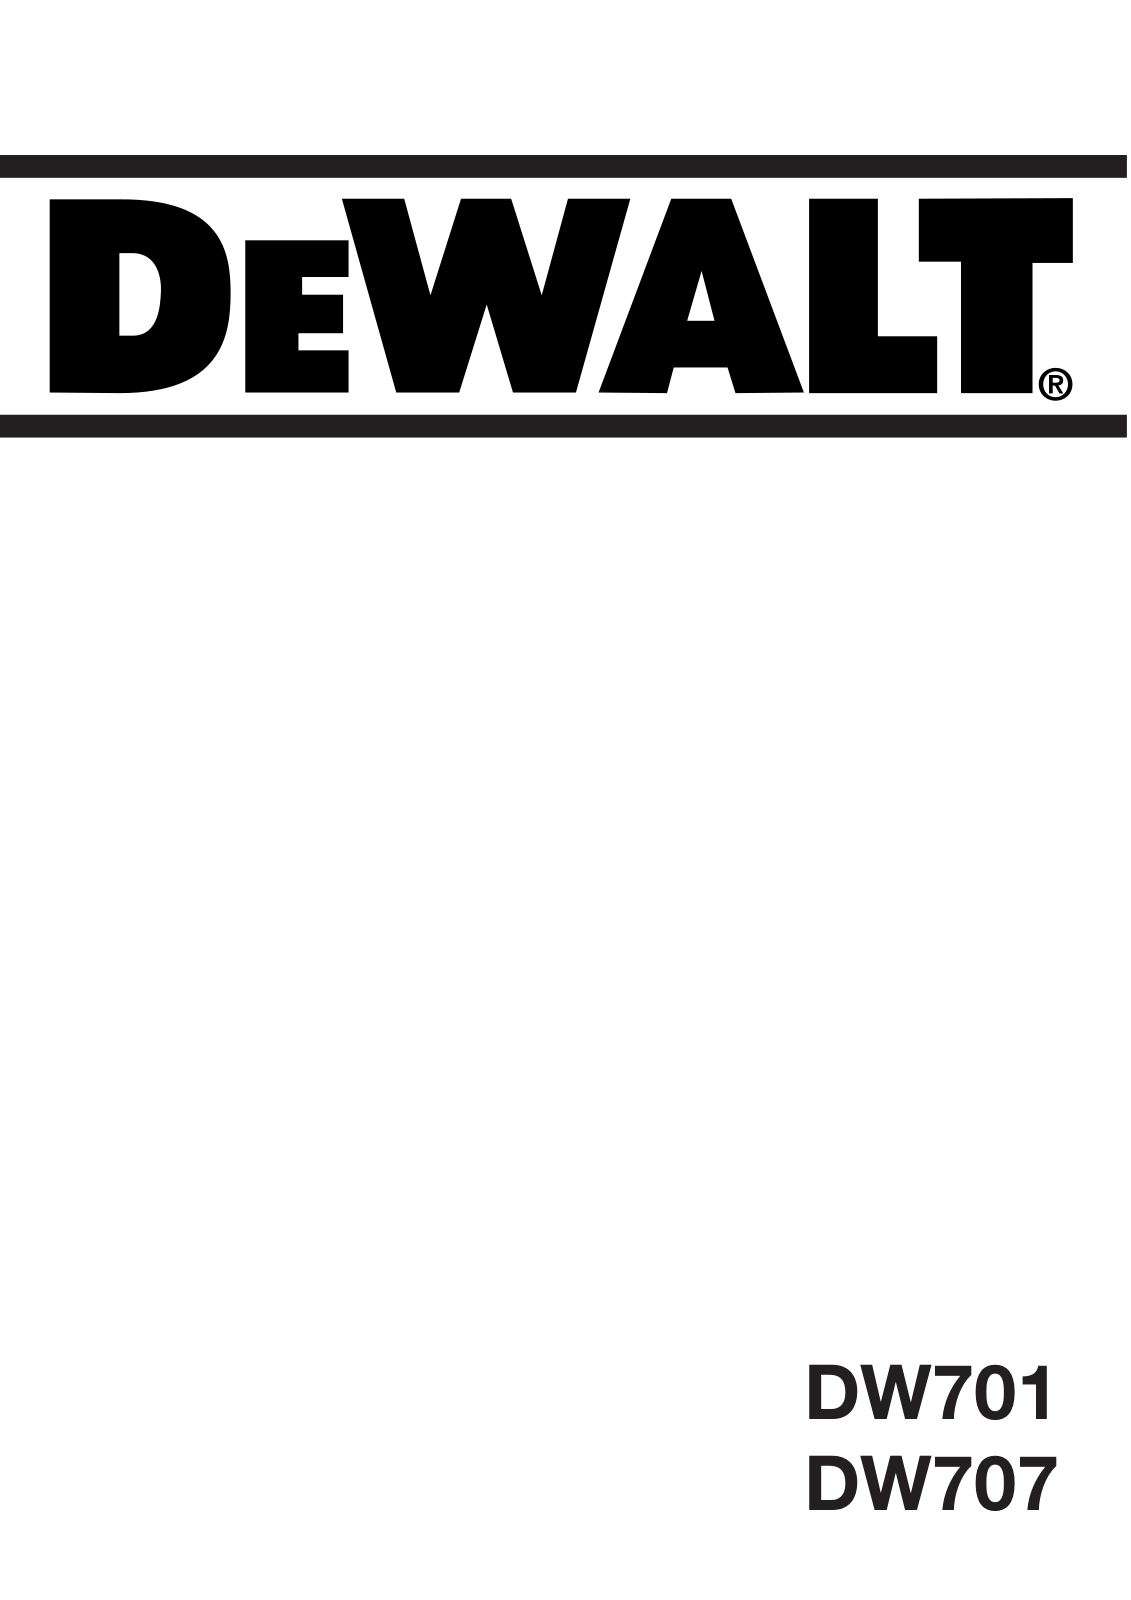 DeWalt DW701, DW707 User Manual